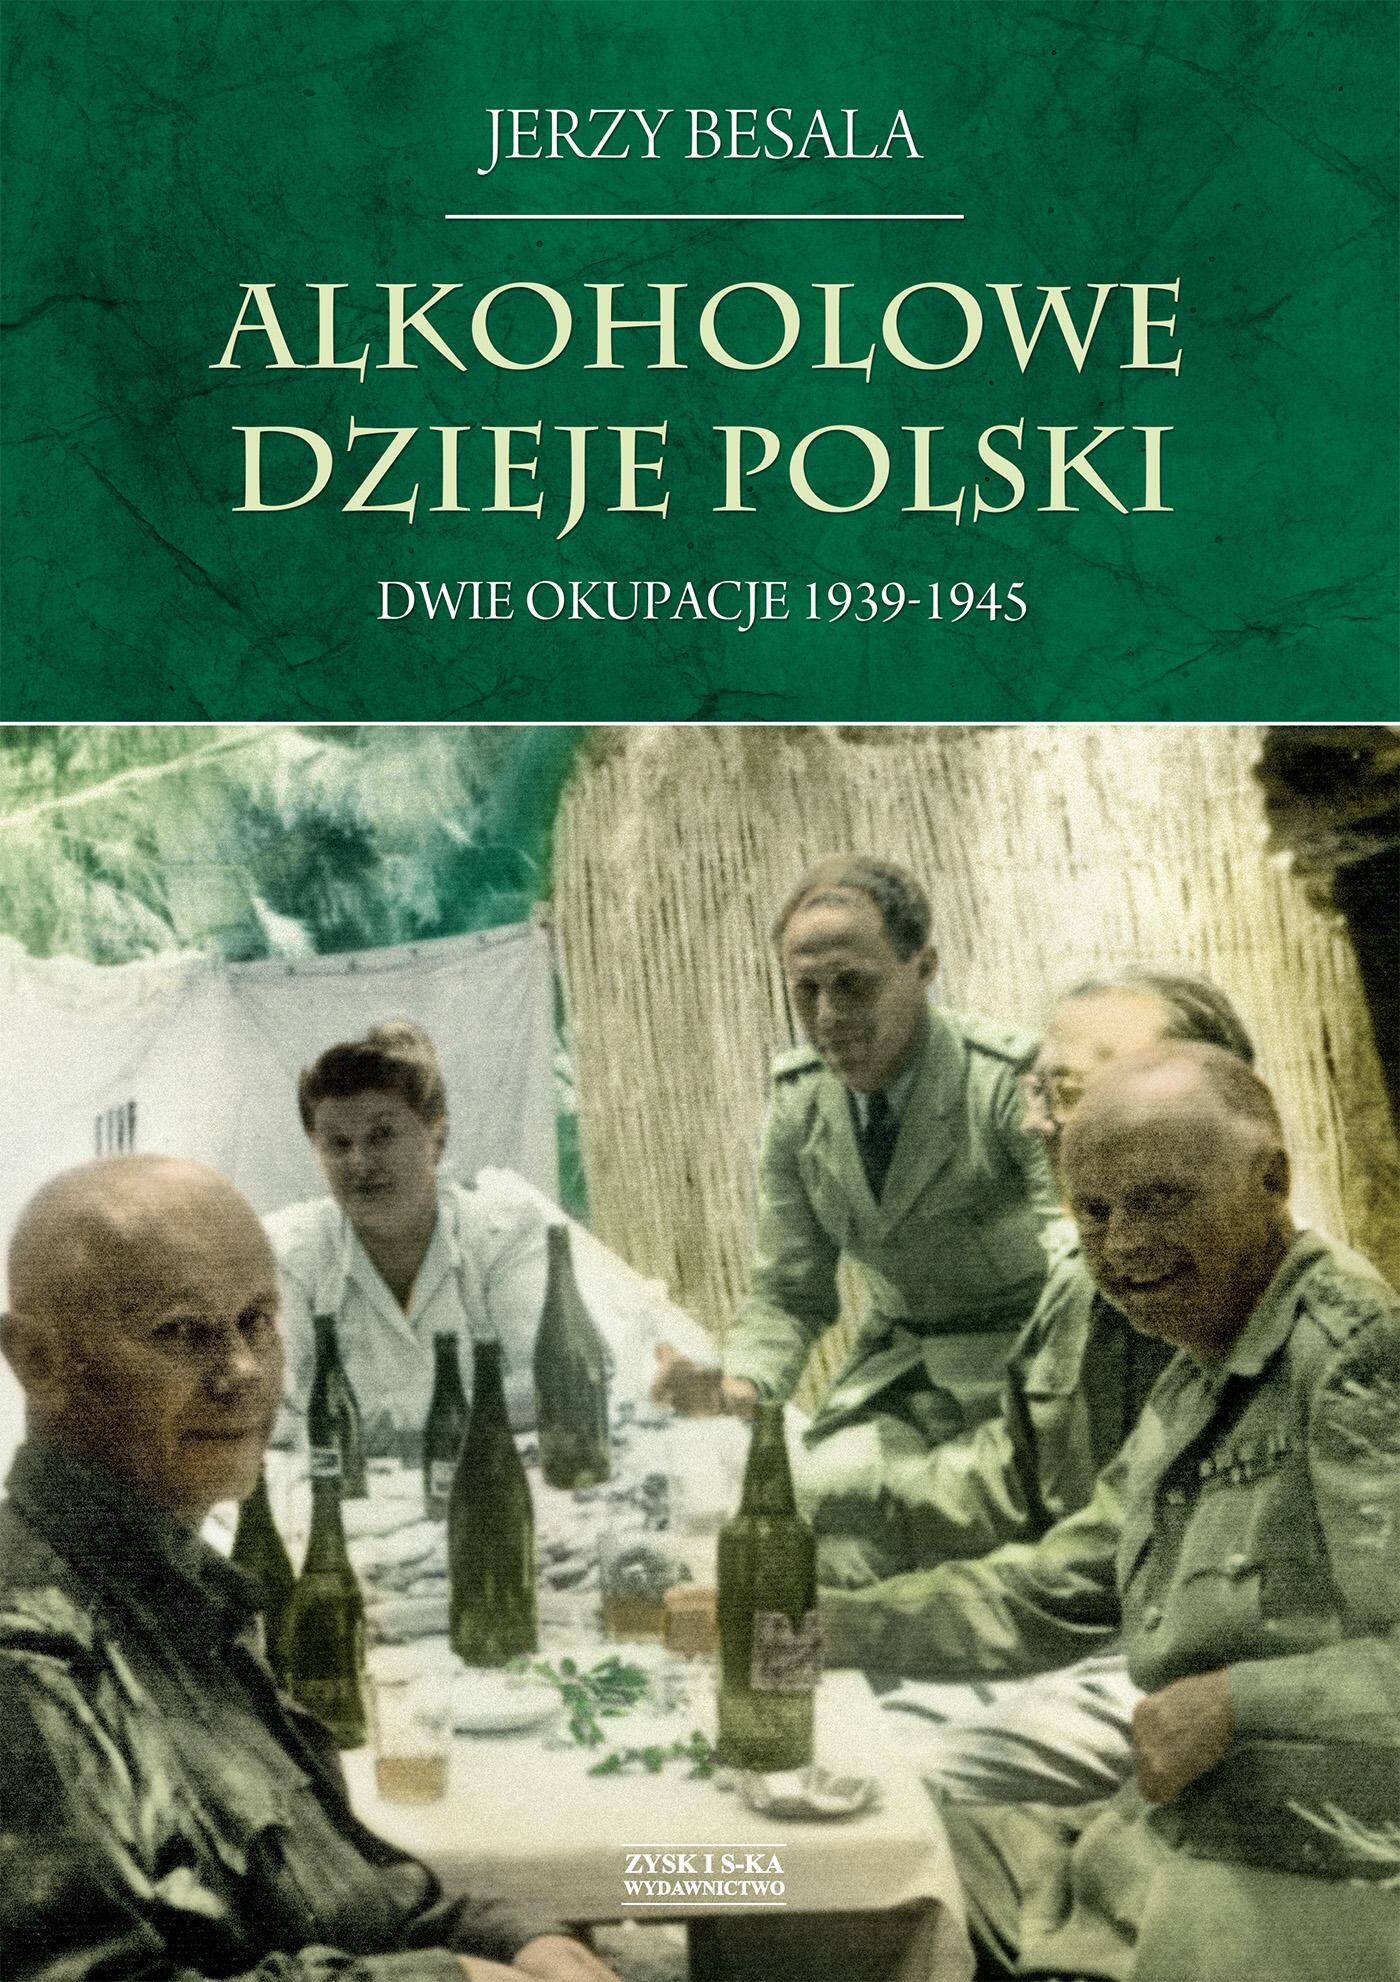 Dwie okupacje 1939-1945. Alkoholowe dzieje Polski